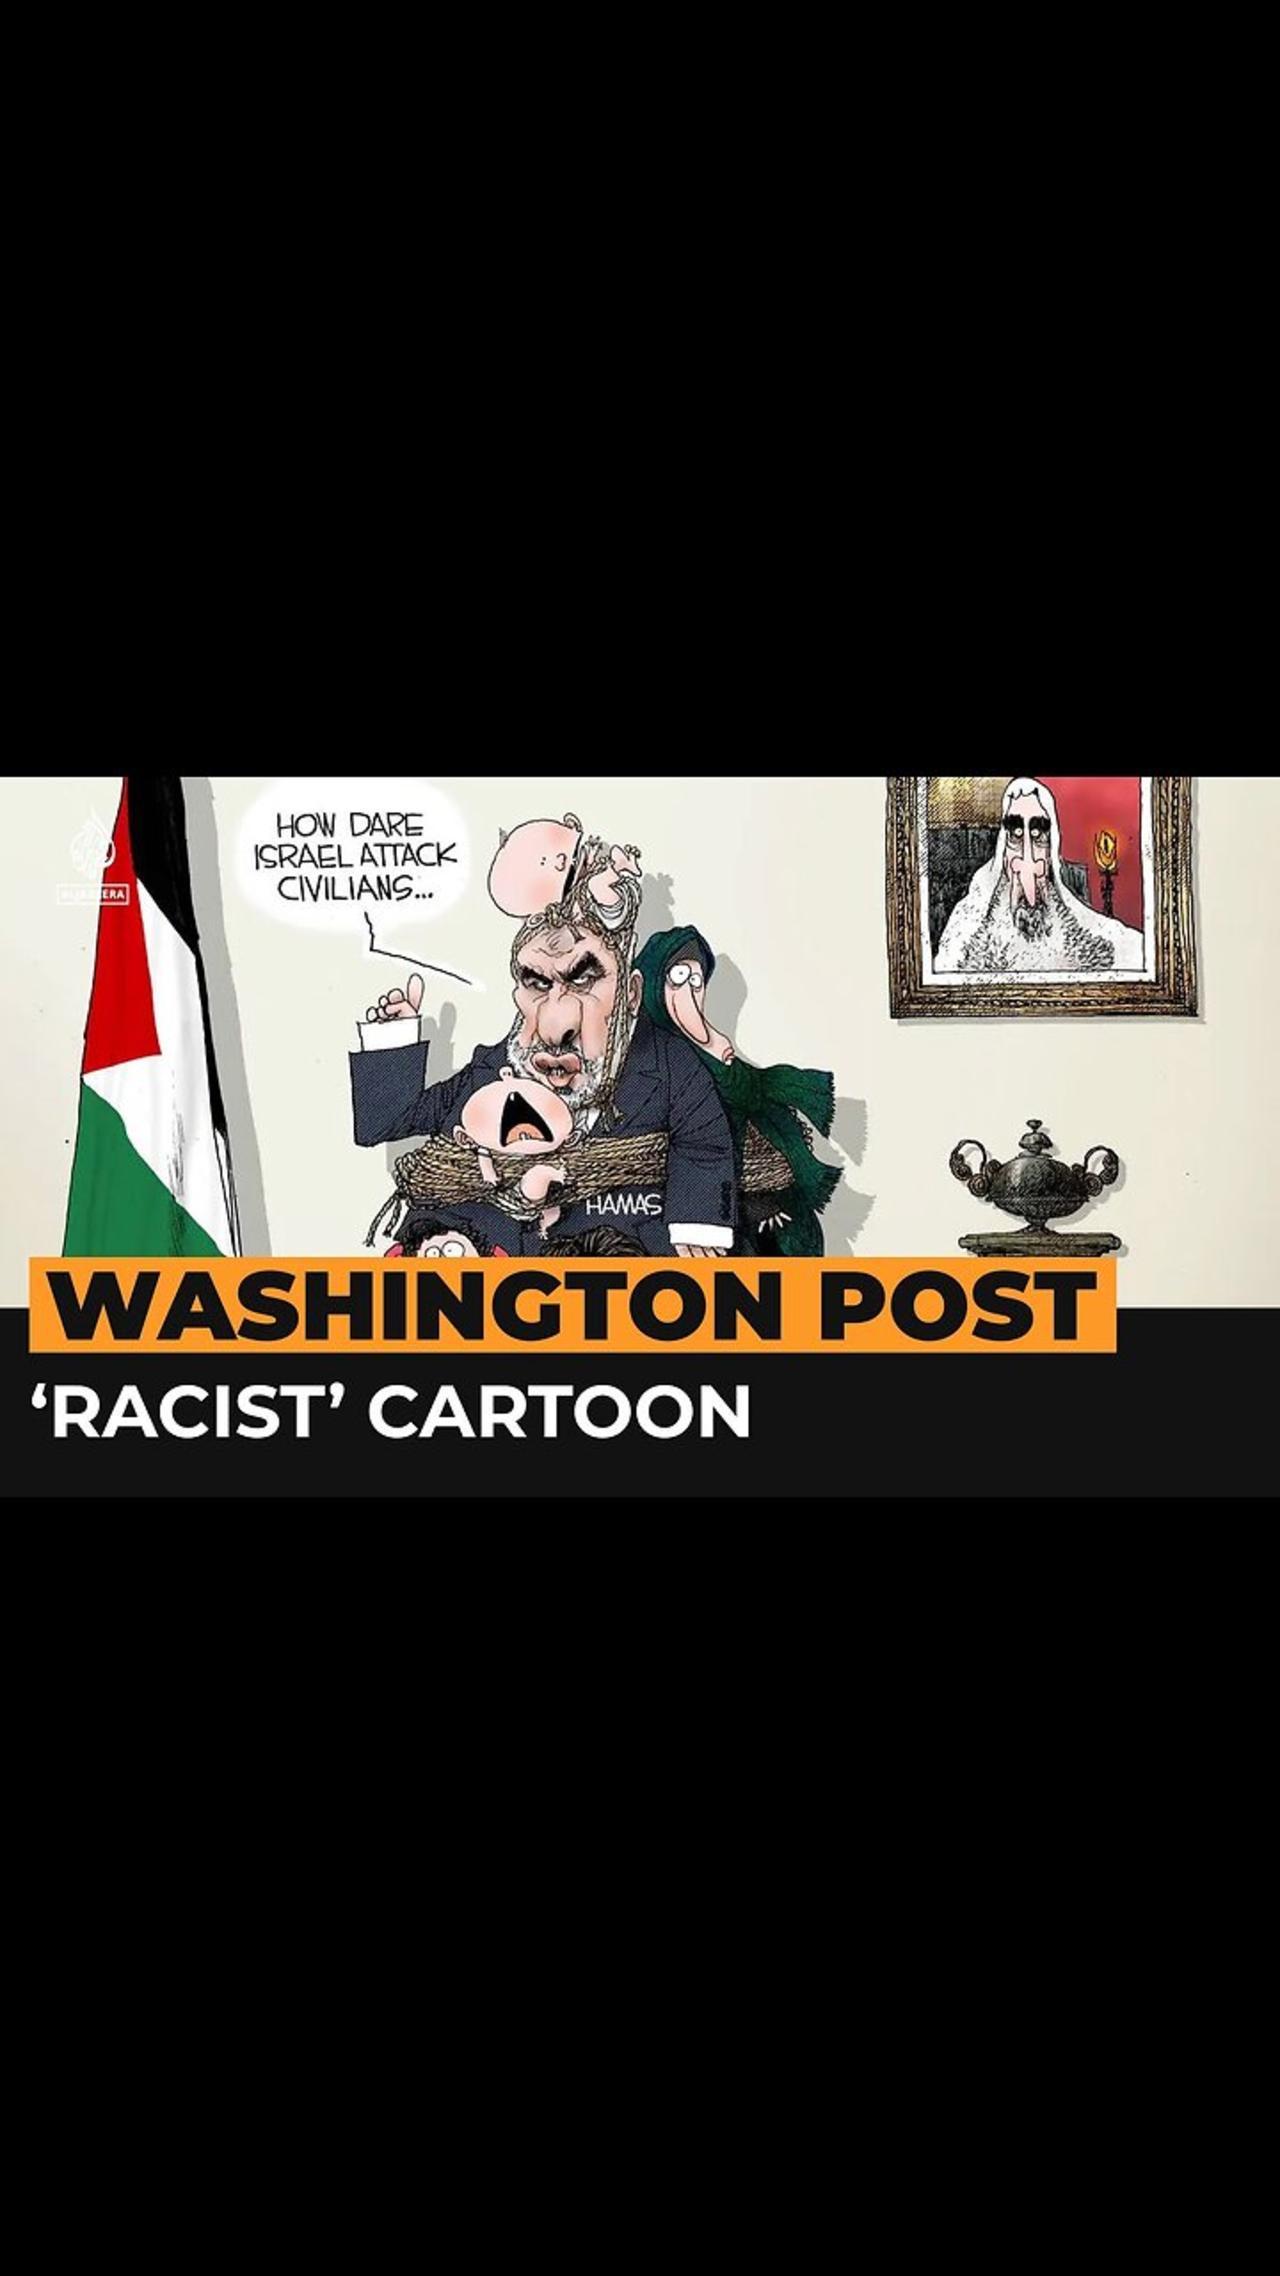 Washington Post cartoon on Gaza condemned as racist | Al Jazeera Newsfeed